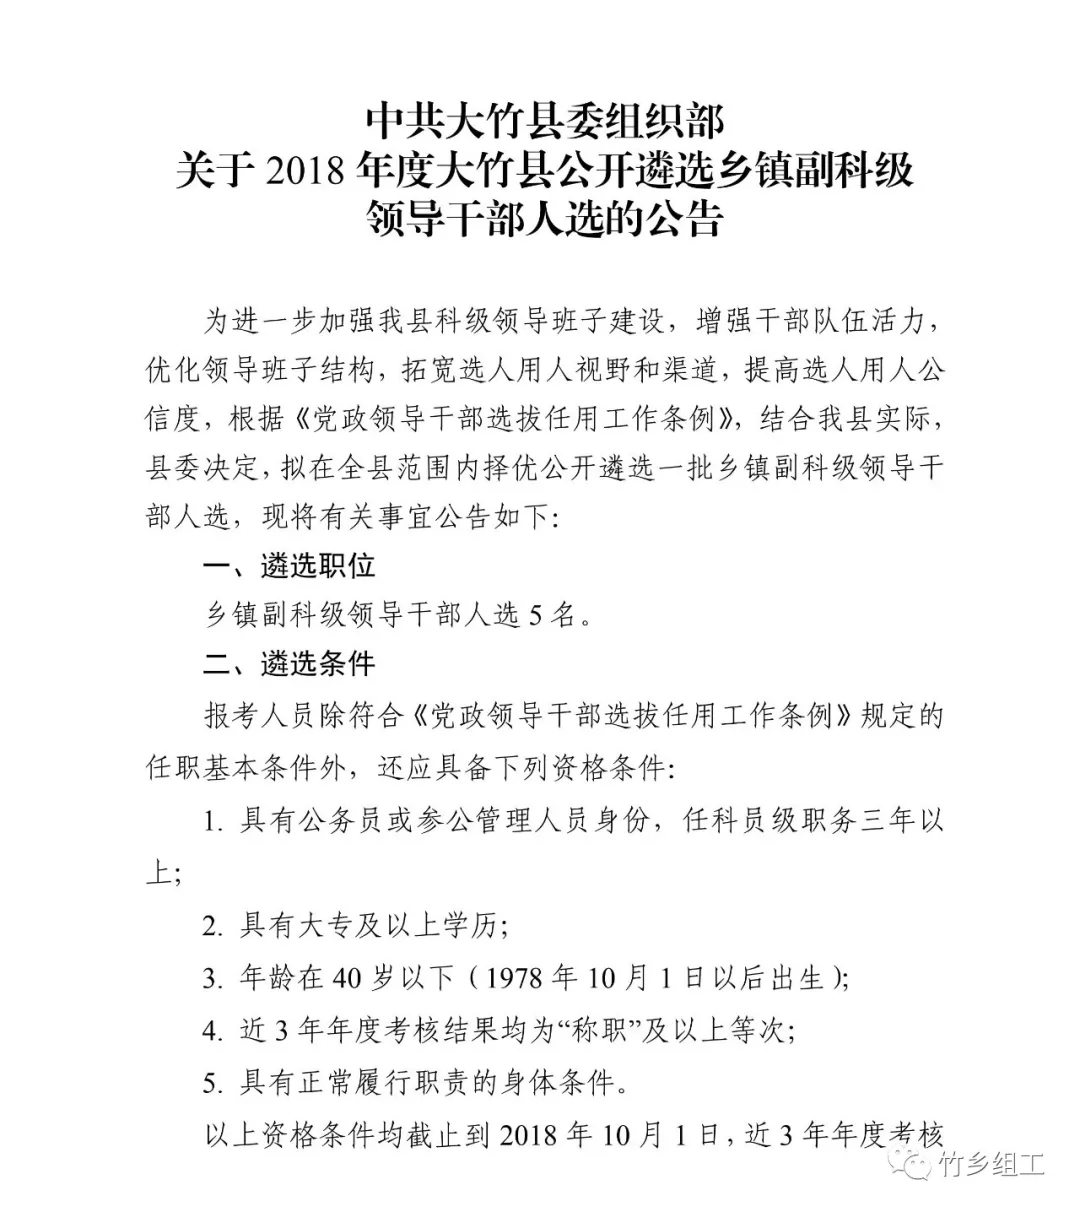 大竹县公开遴选乡镇副科级领导干部人选的公告1.jpg